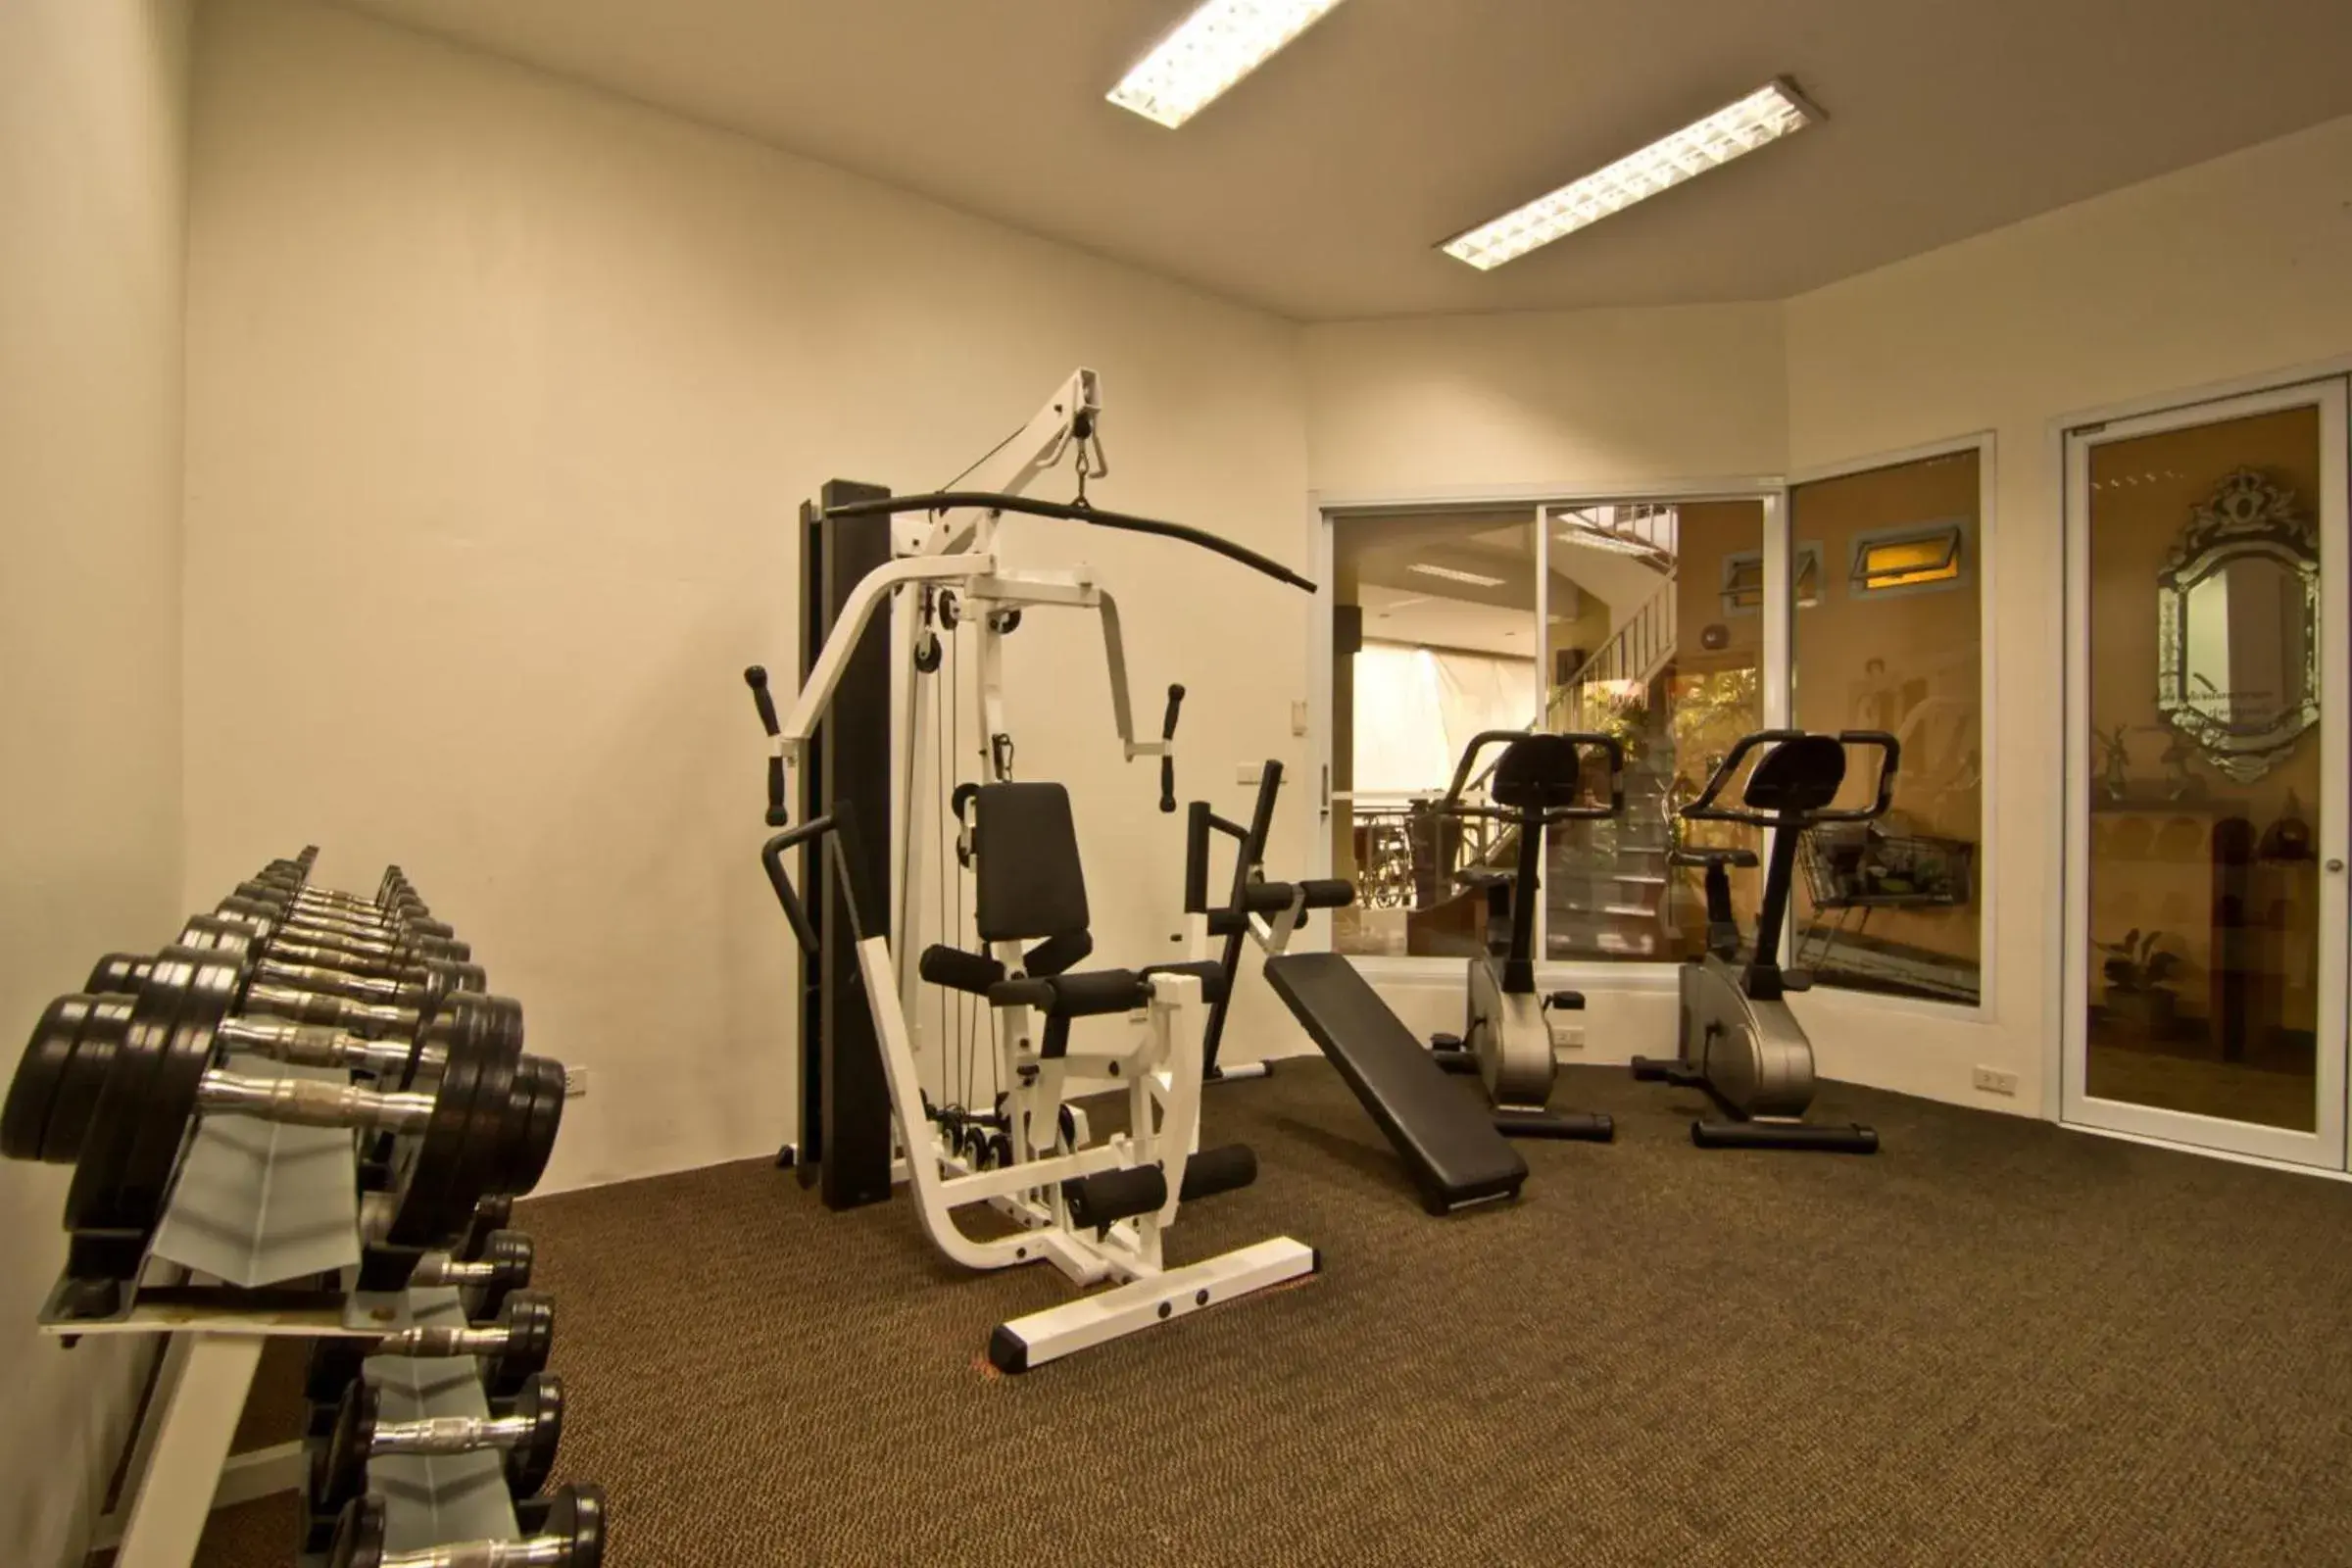 Fitness centre/facilities, Fitness Center/Facilities in Bella Villa Cabana